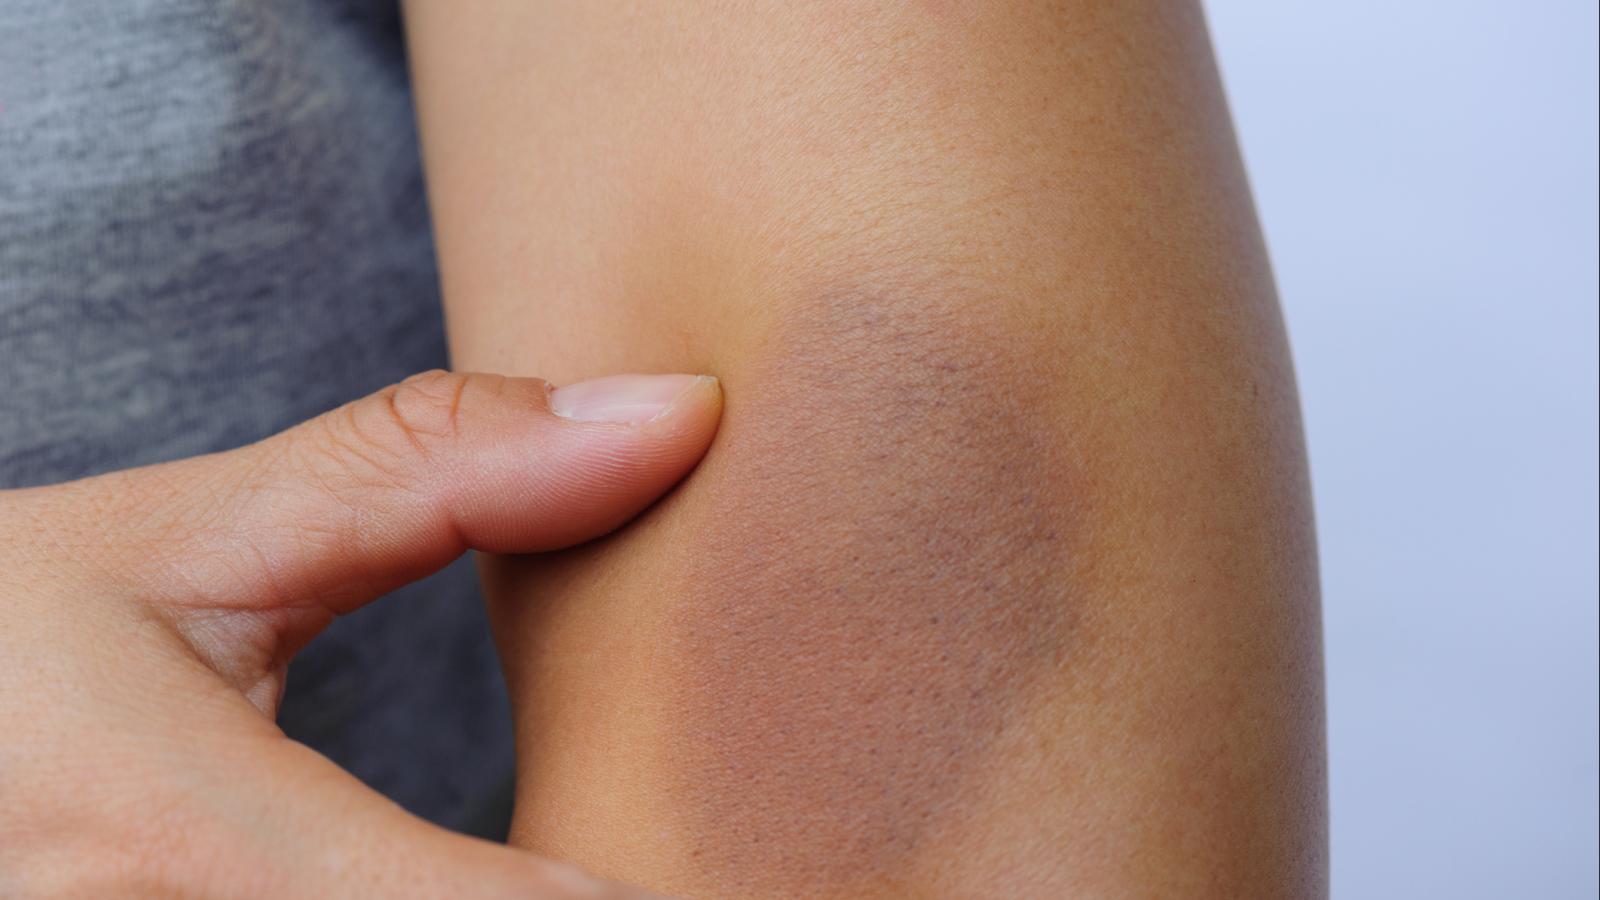 Bruise on an arm